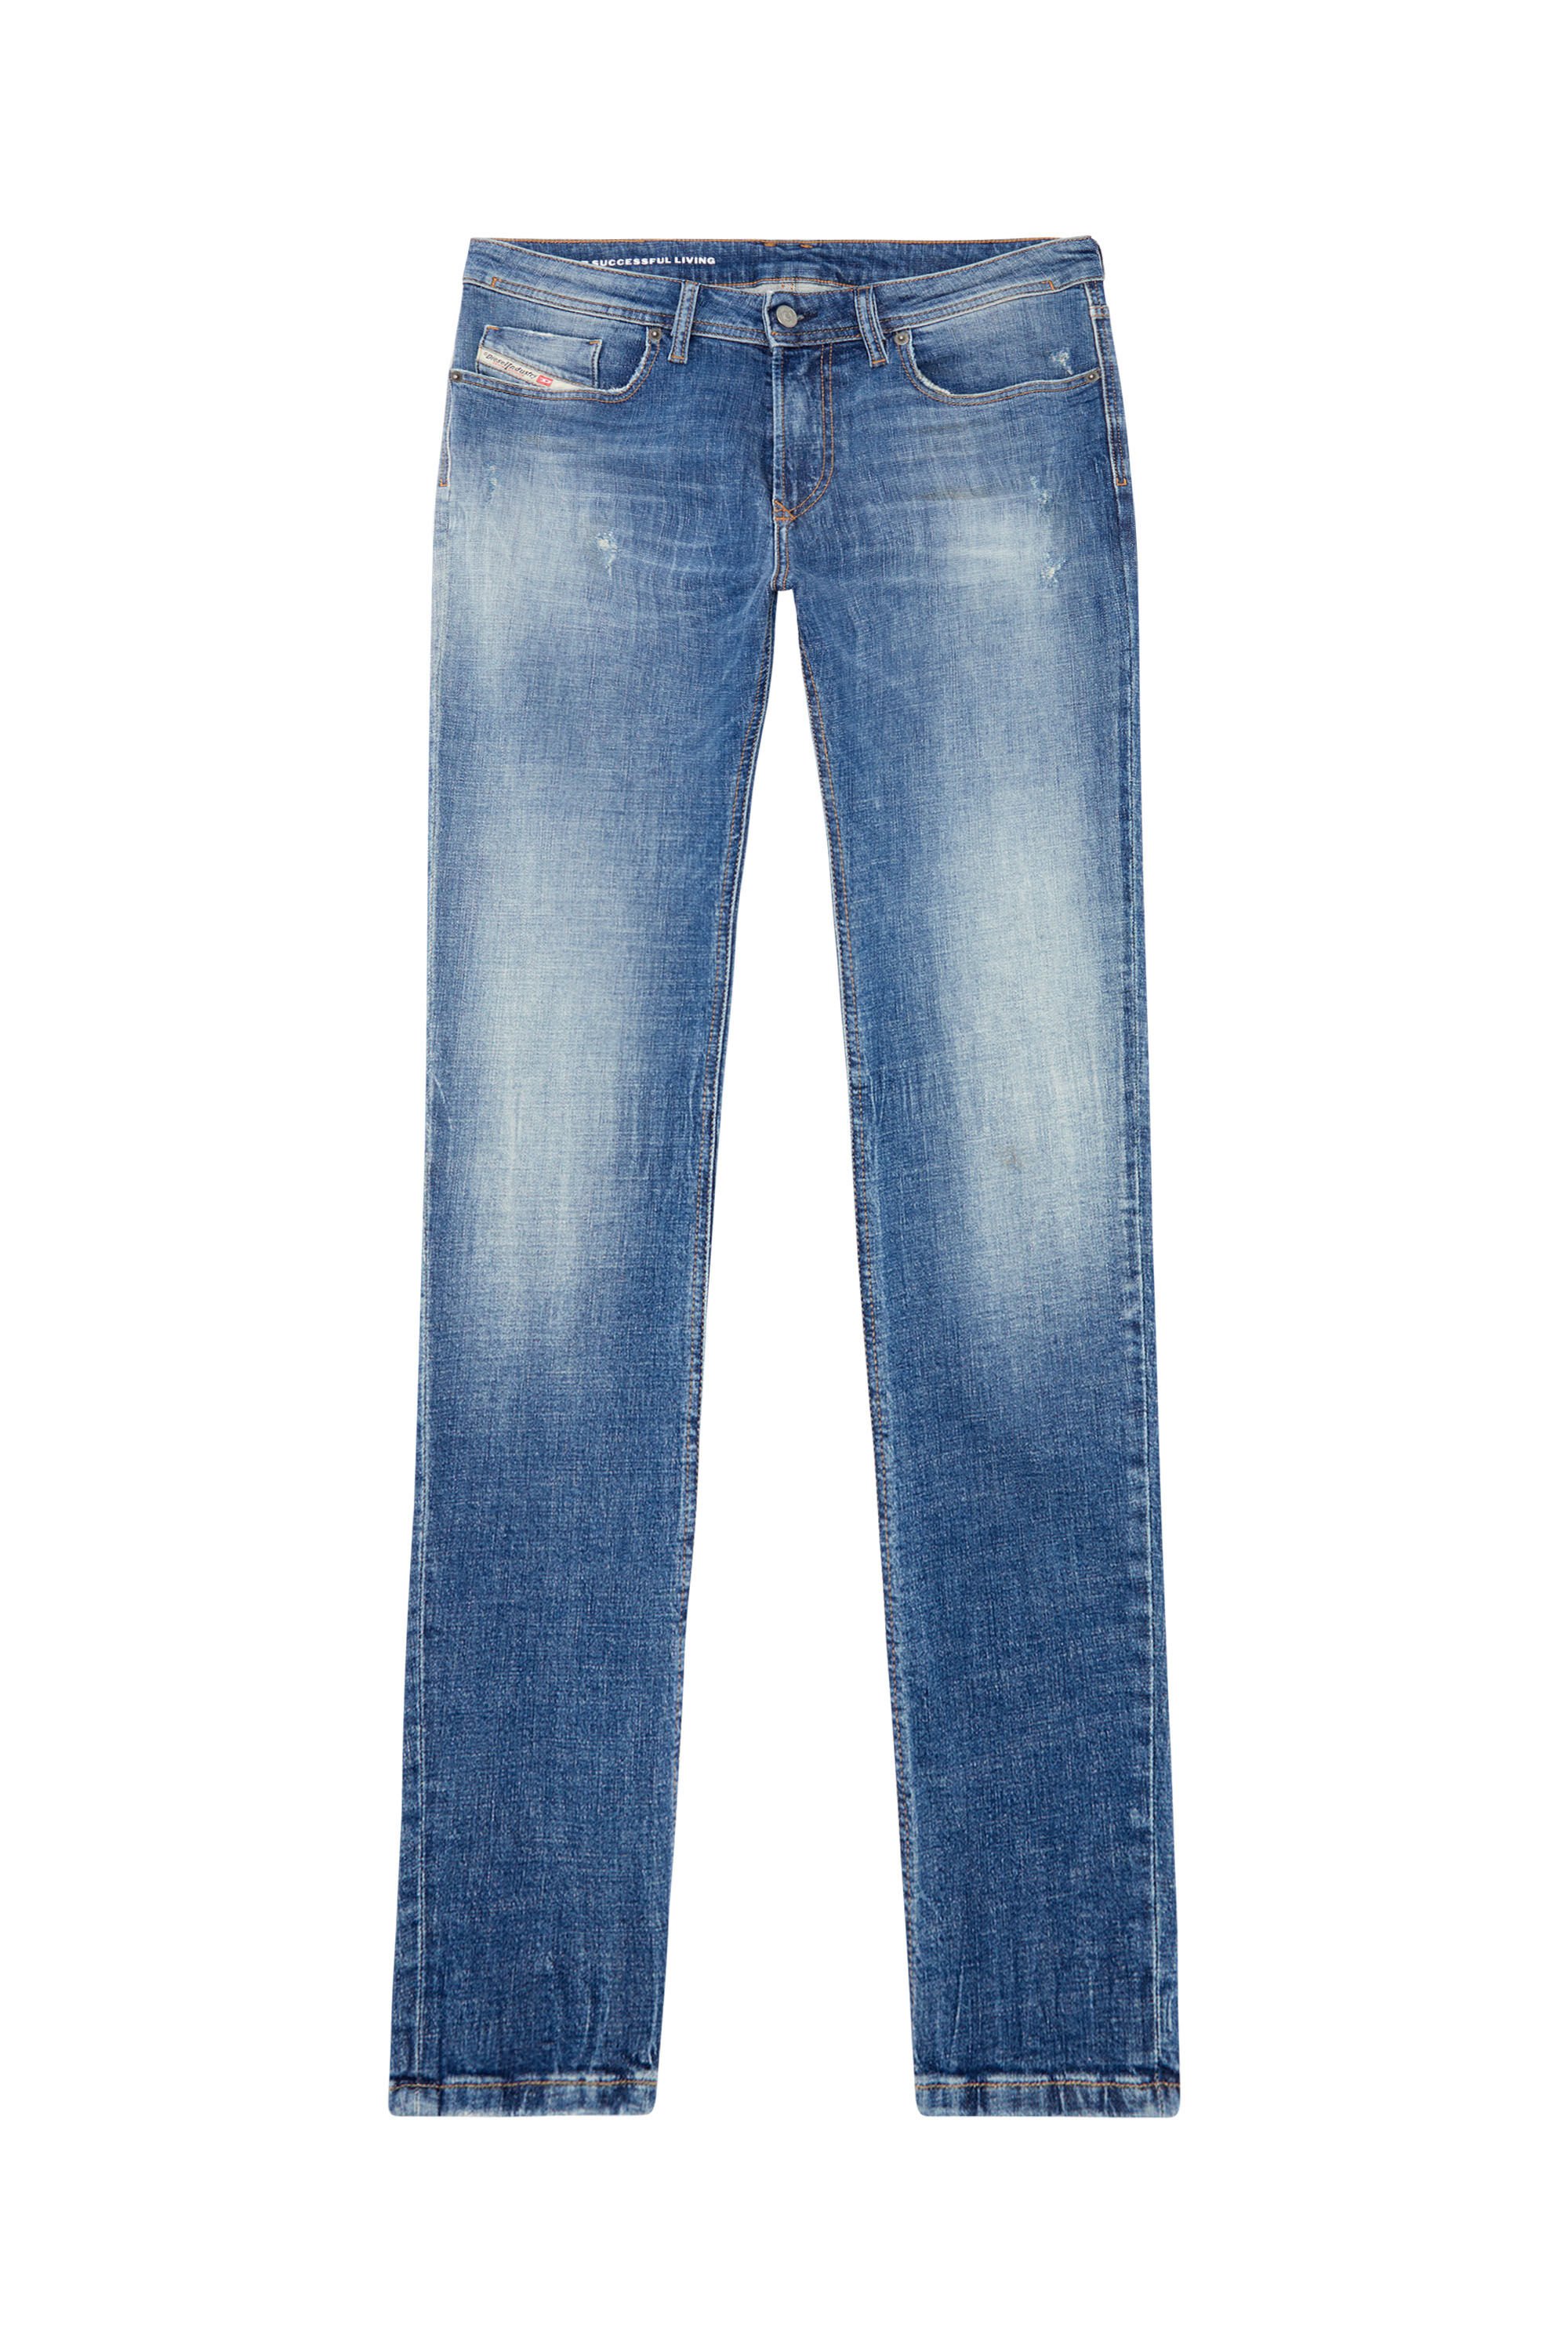 Diesel - Skinny Jeans 1979 Sleenker 0GRDF, Medium blue - Image 2